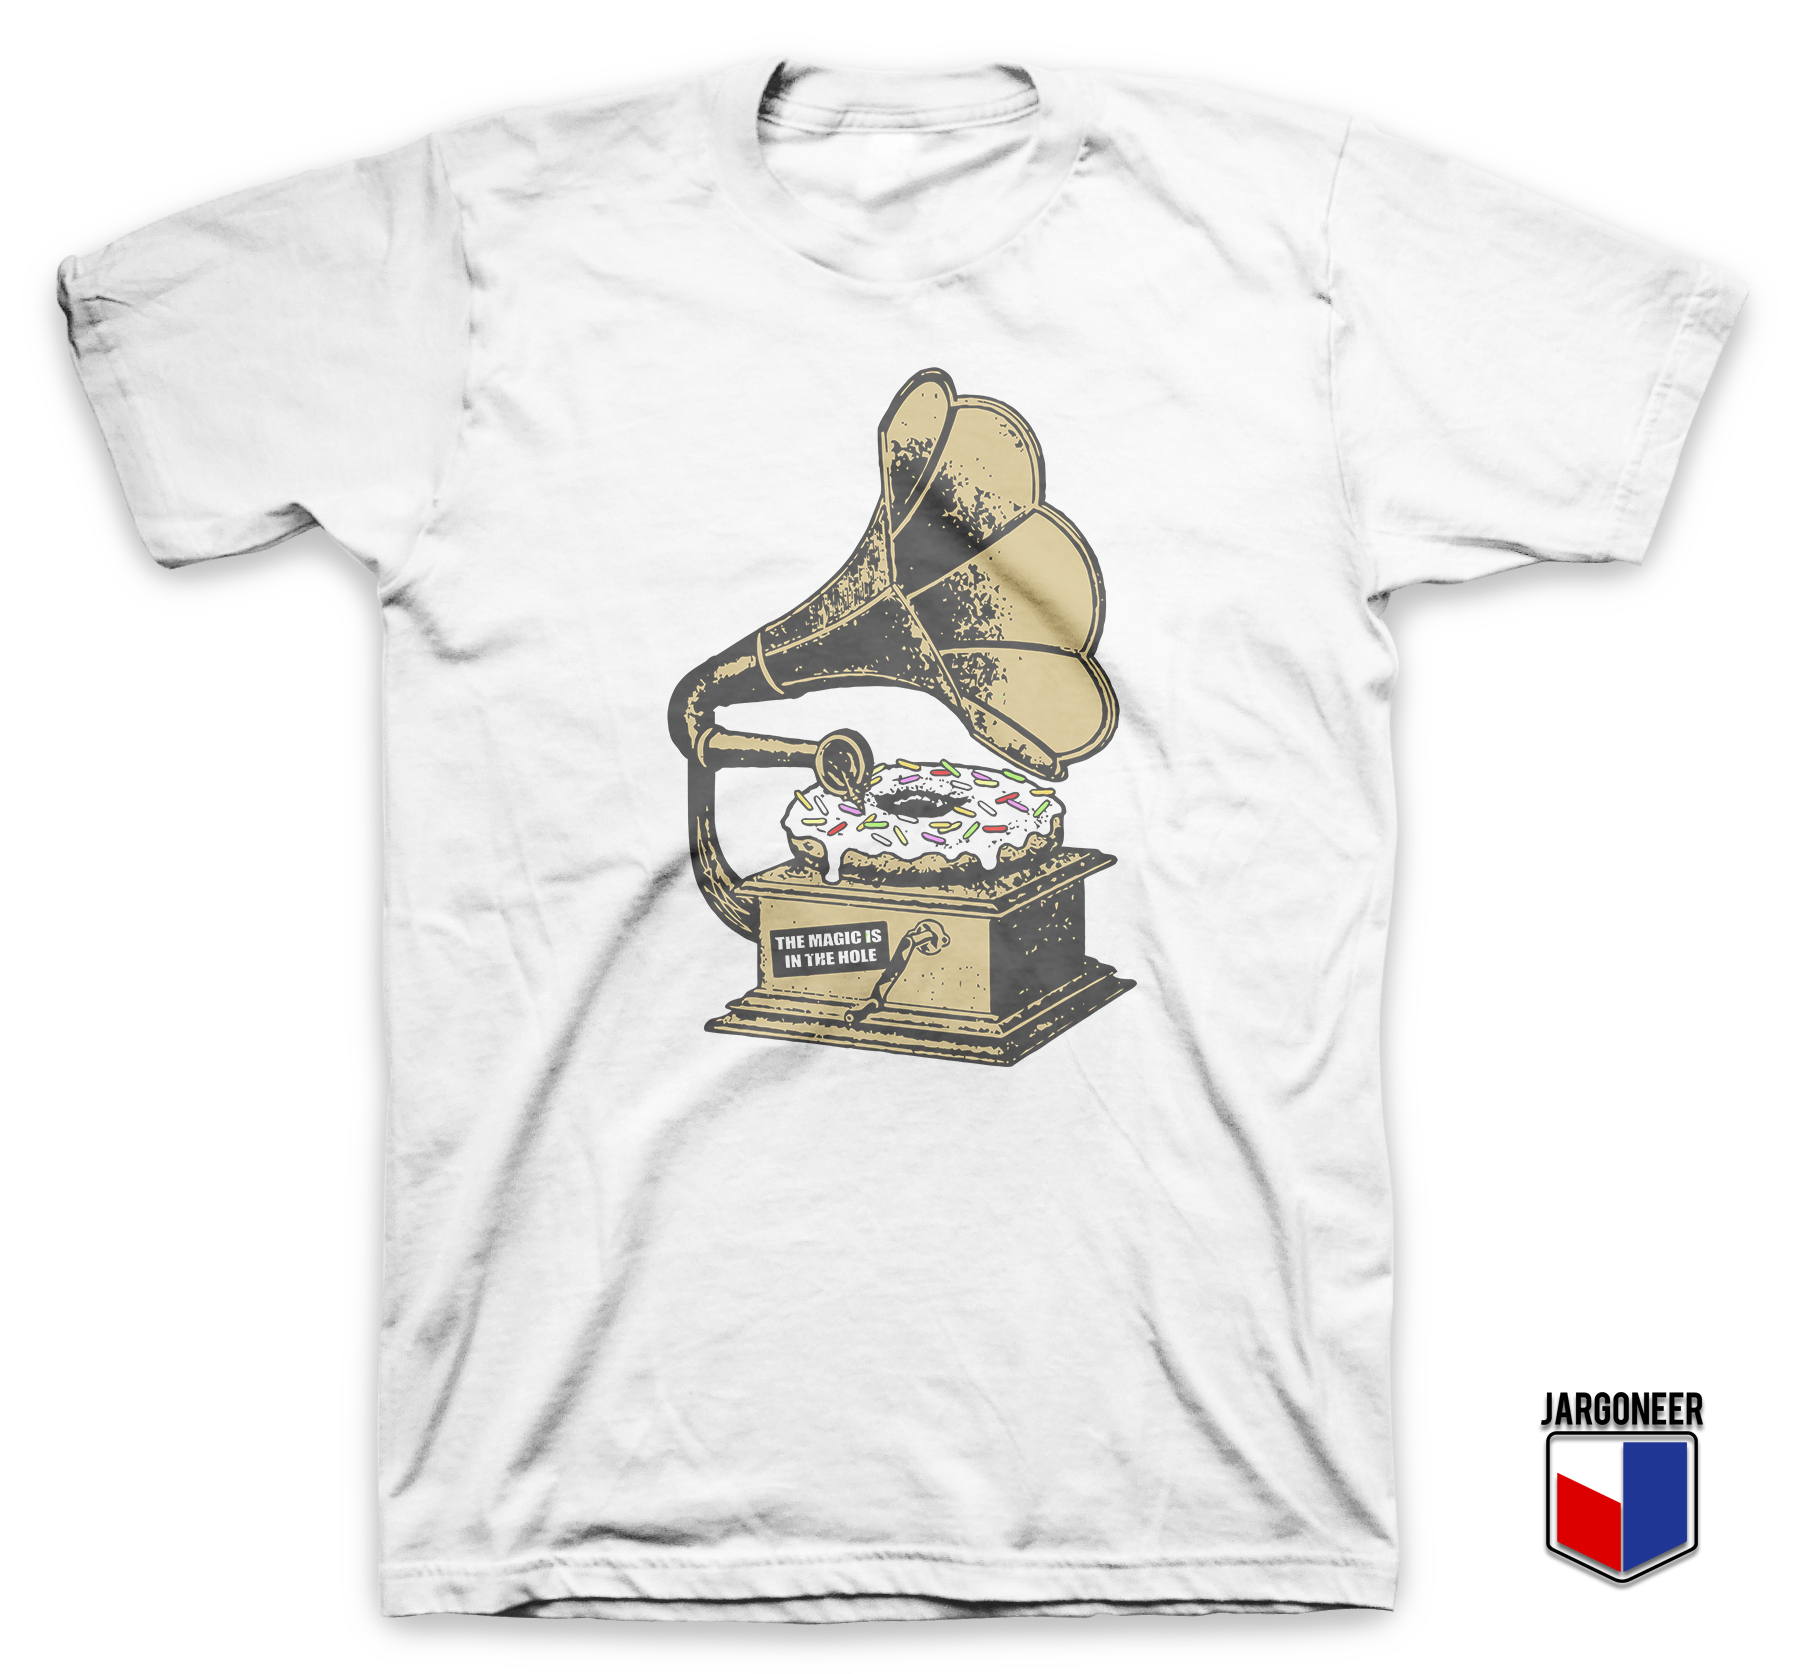 The Vinyl Donut White T Shirt - Shop Unique Graphic Cool Shirt Designs